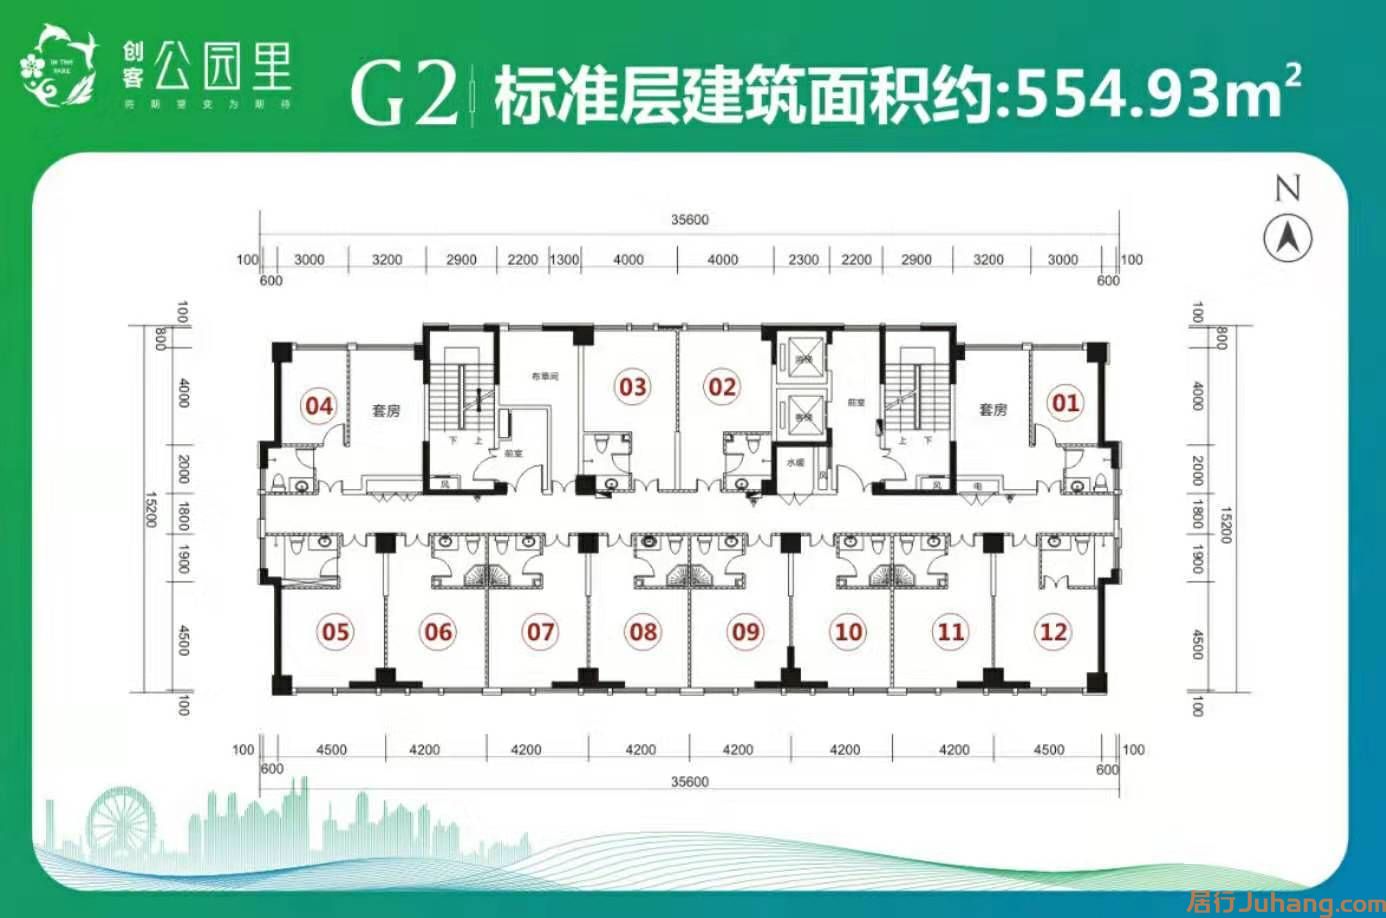 新乡创客公园里G2公寓平面图1室1厅1卫0平米